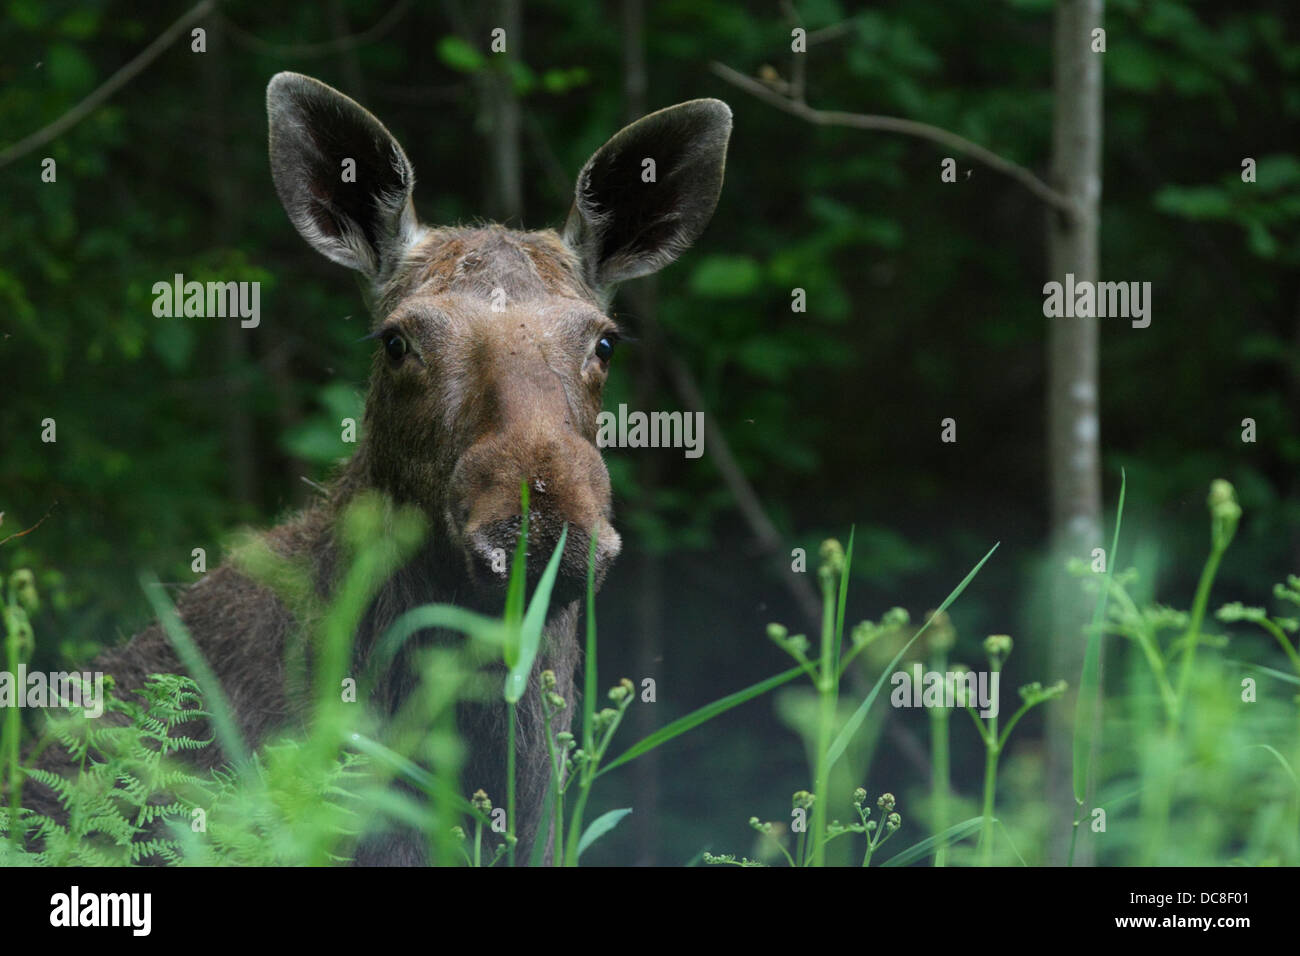 Portrait of an Elk (Alces alces). Stock Photo